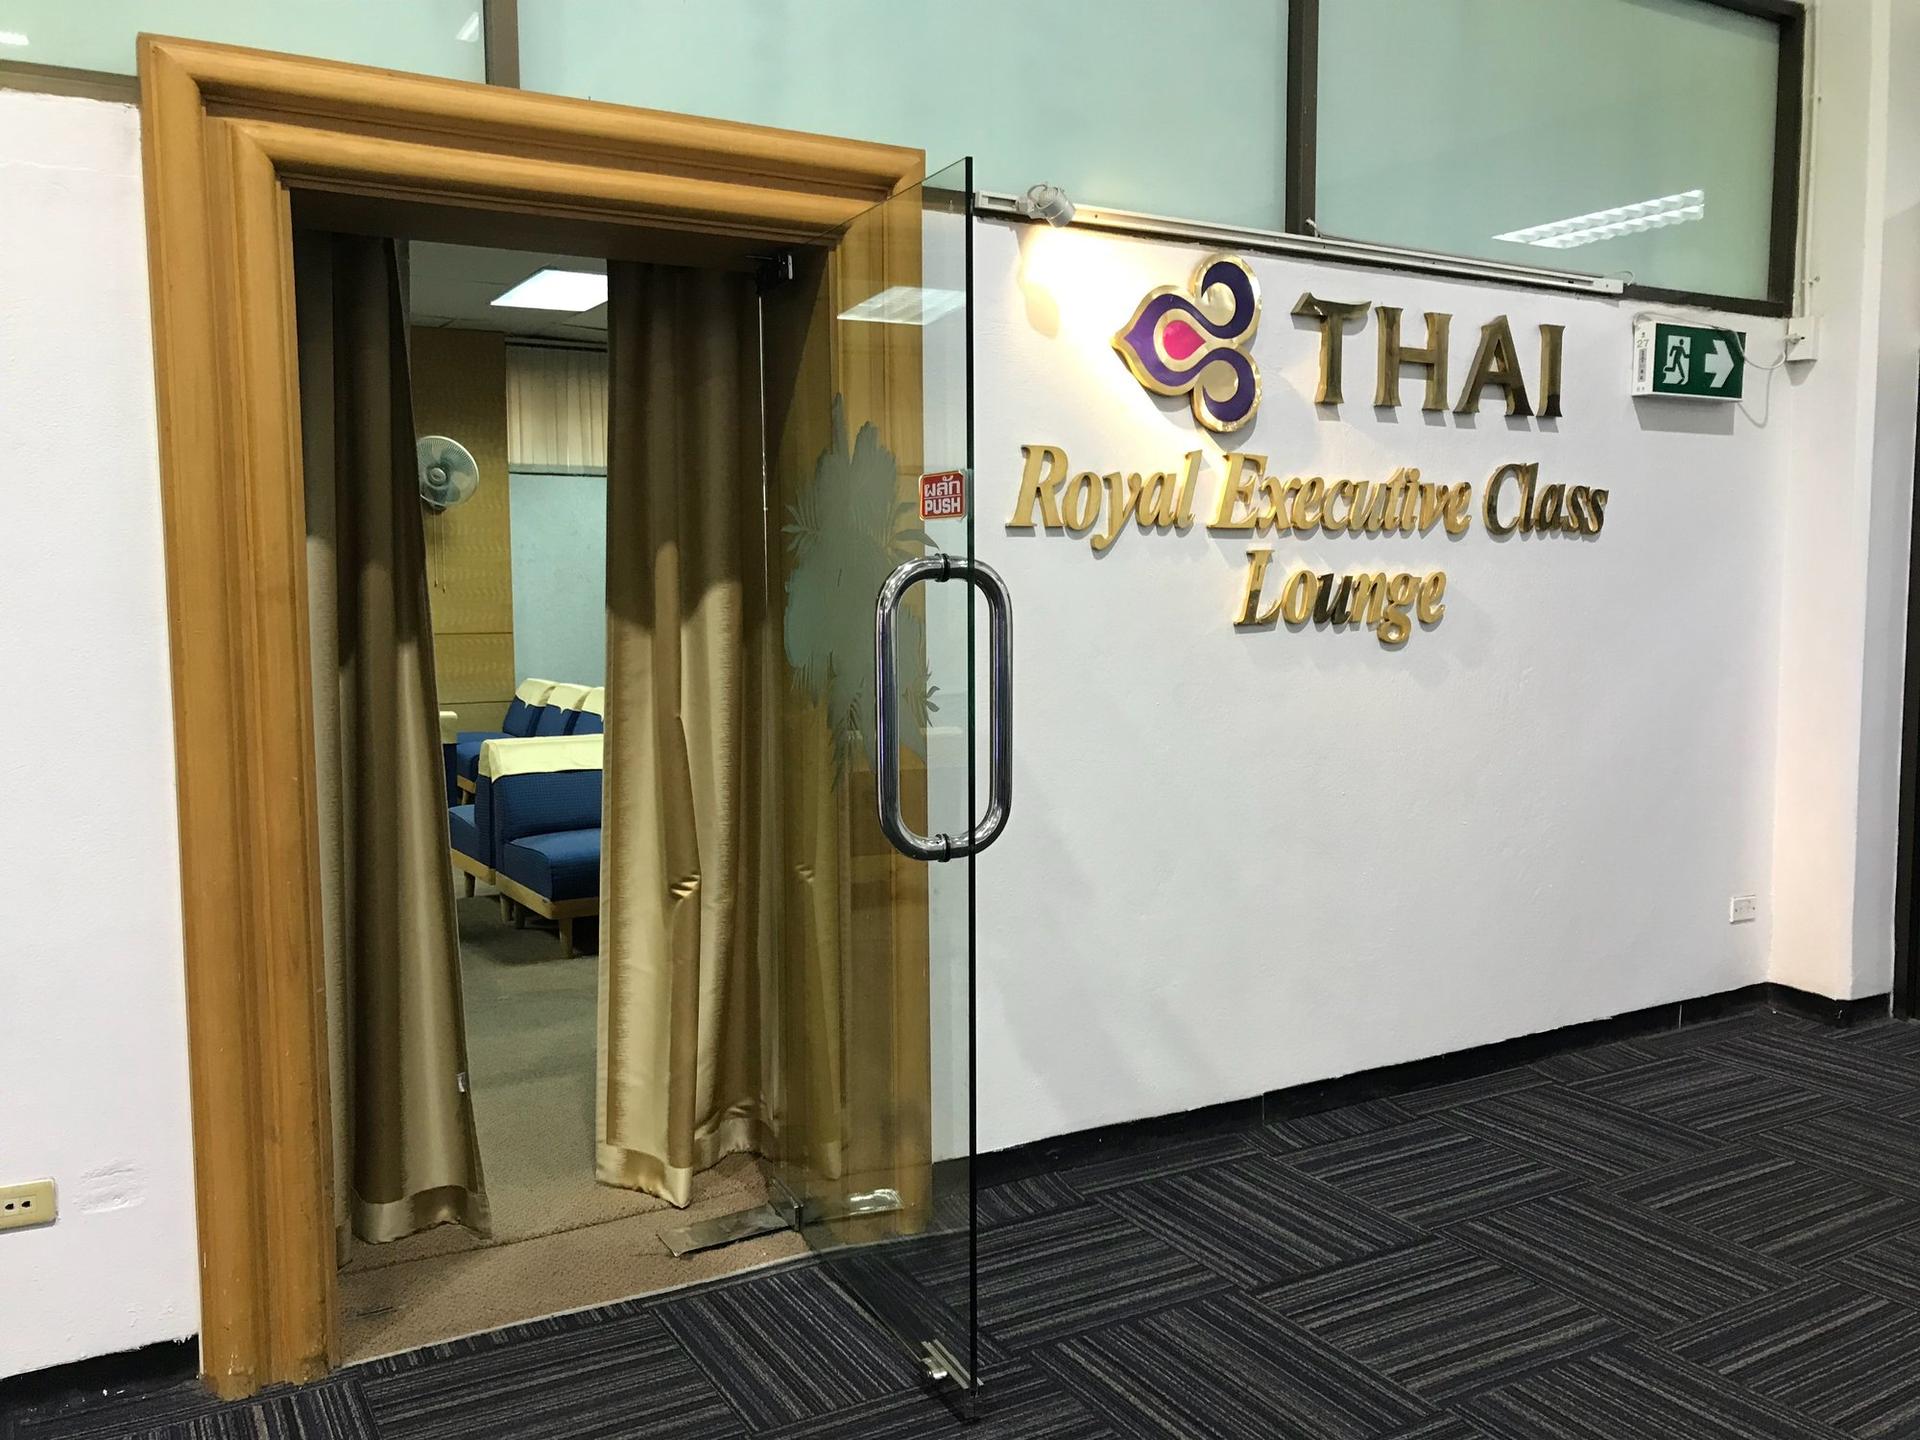 Thai Airways Royal Silk Lounge image 4 of 4